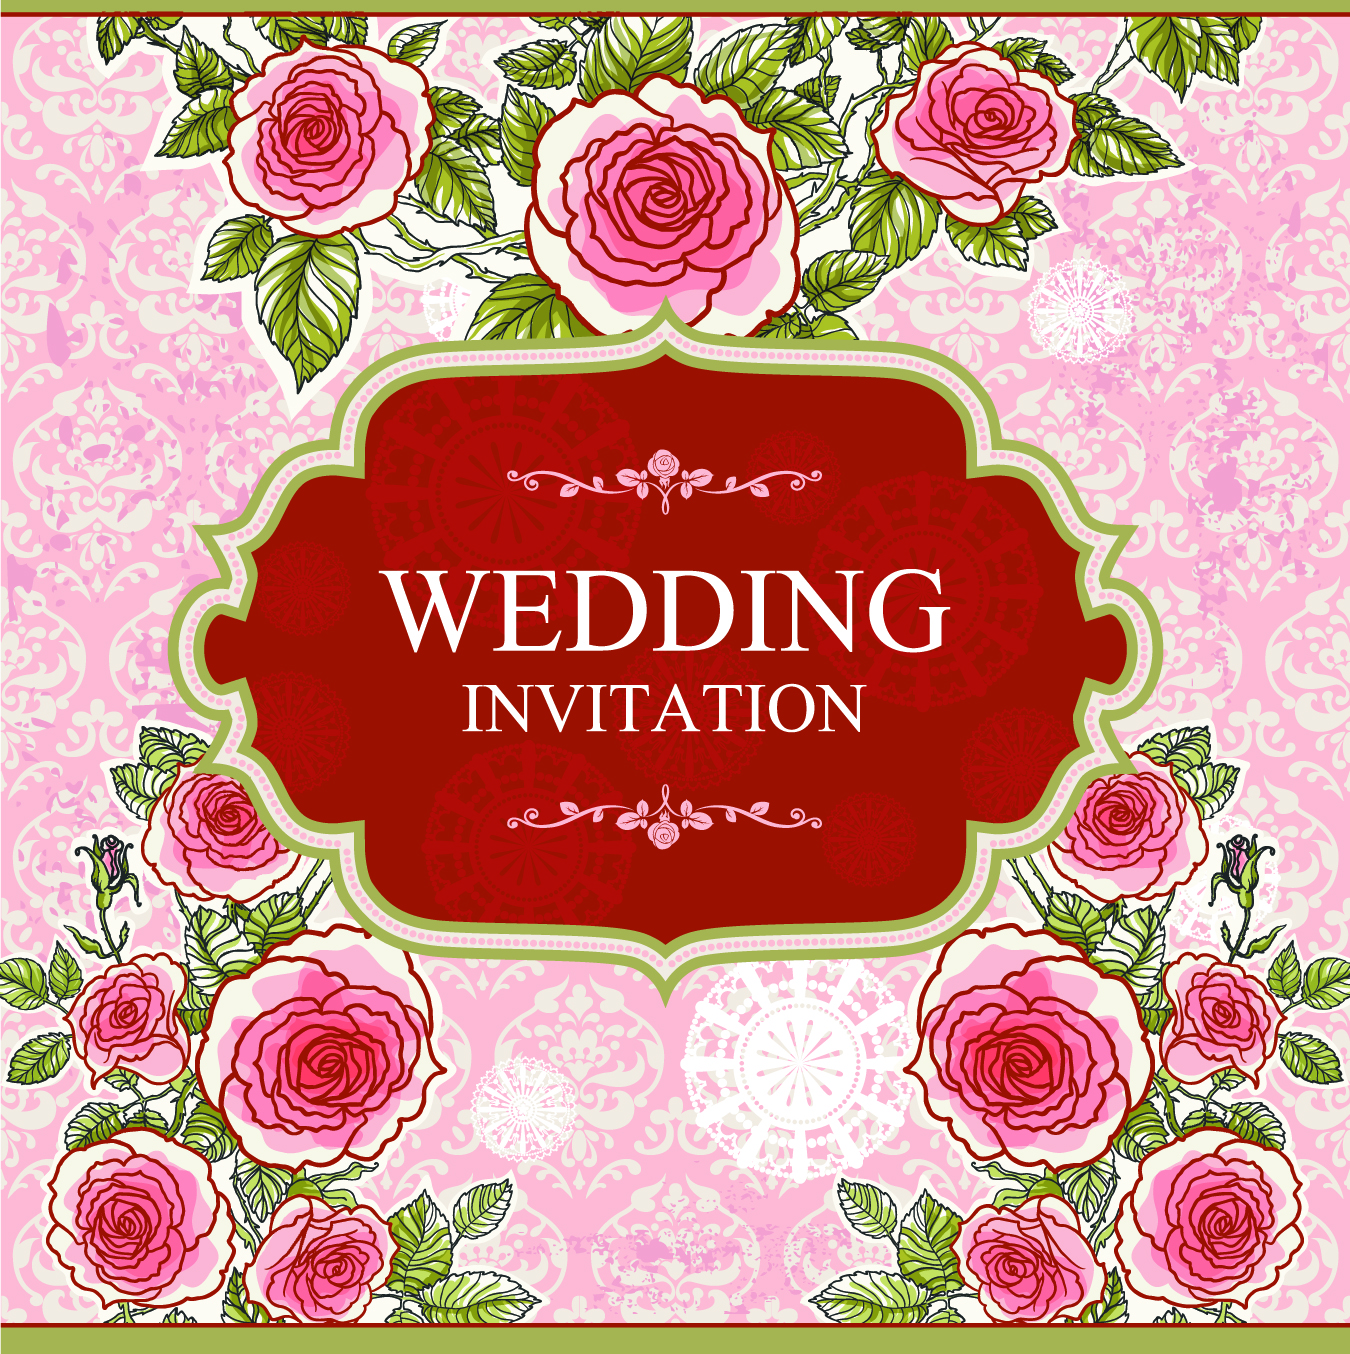 Download Floral Wedding Invitations Vector » Векторные клипарты, текстурные фоны, бекграунды, AI, EPS, SVG